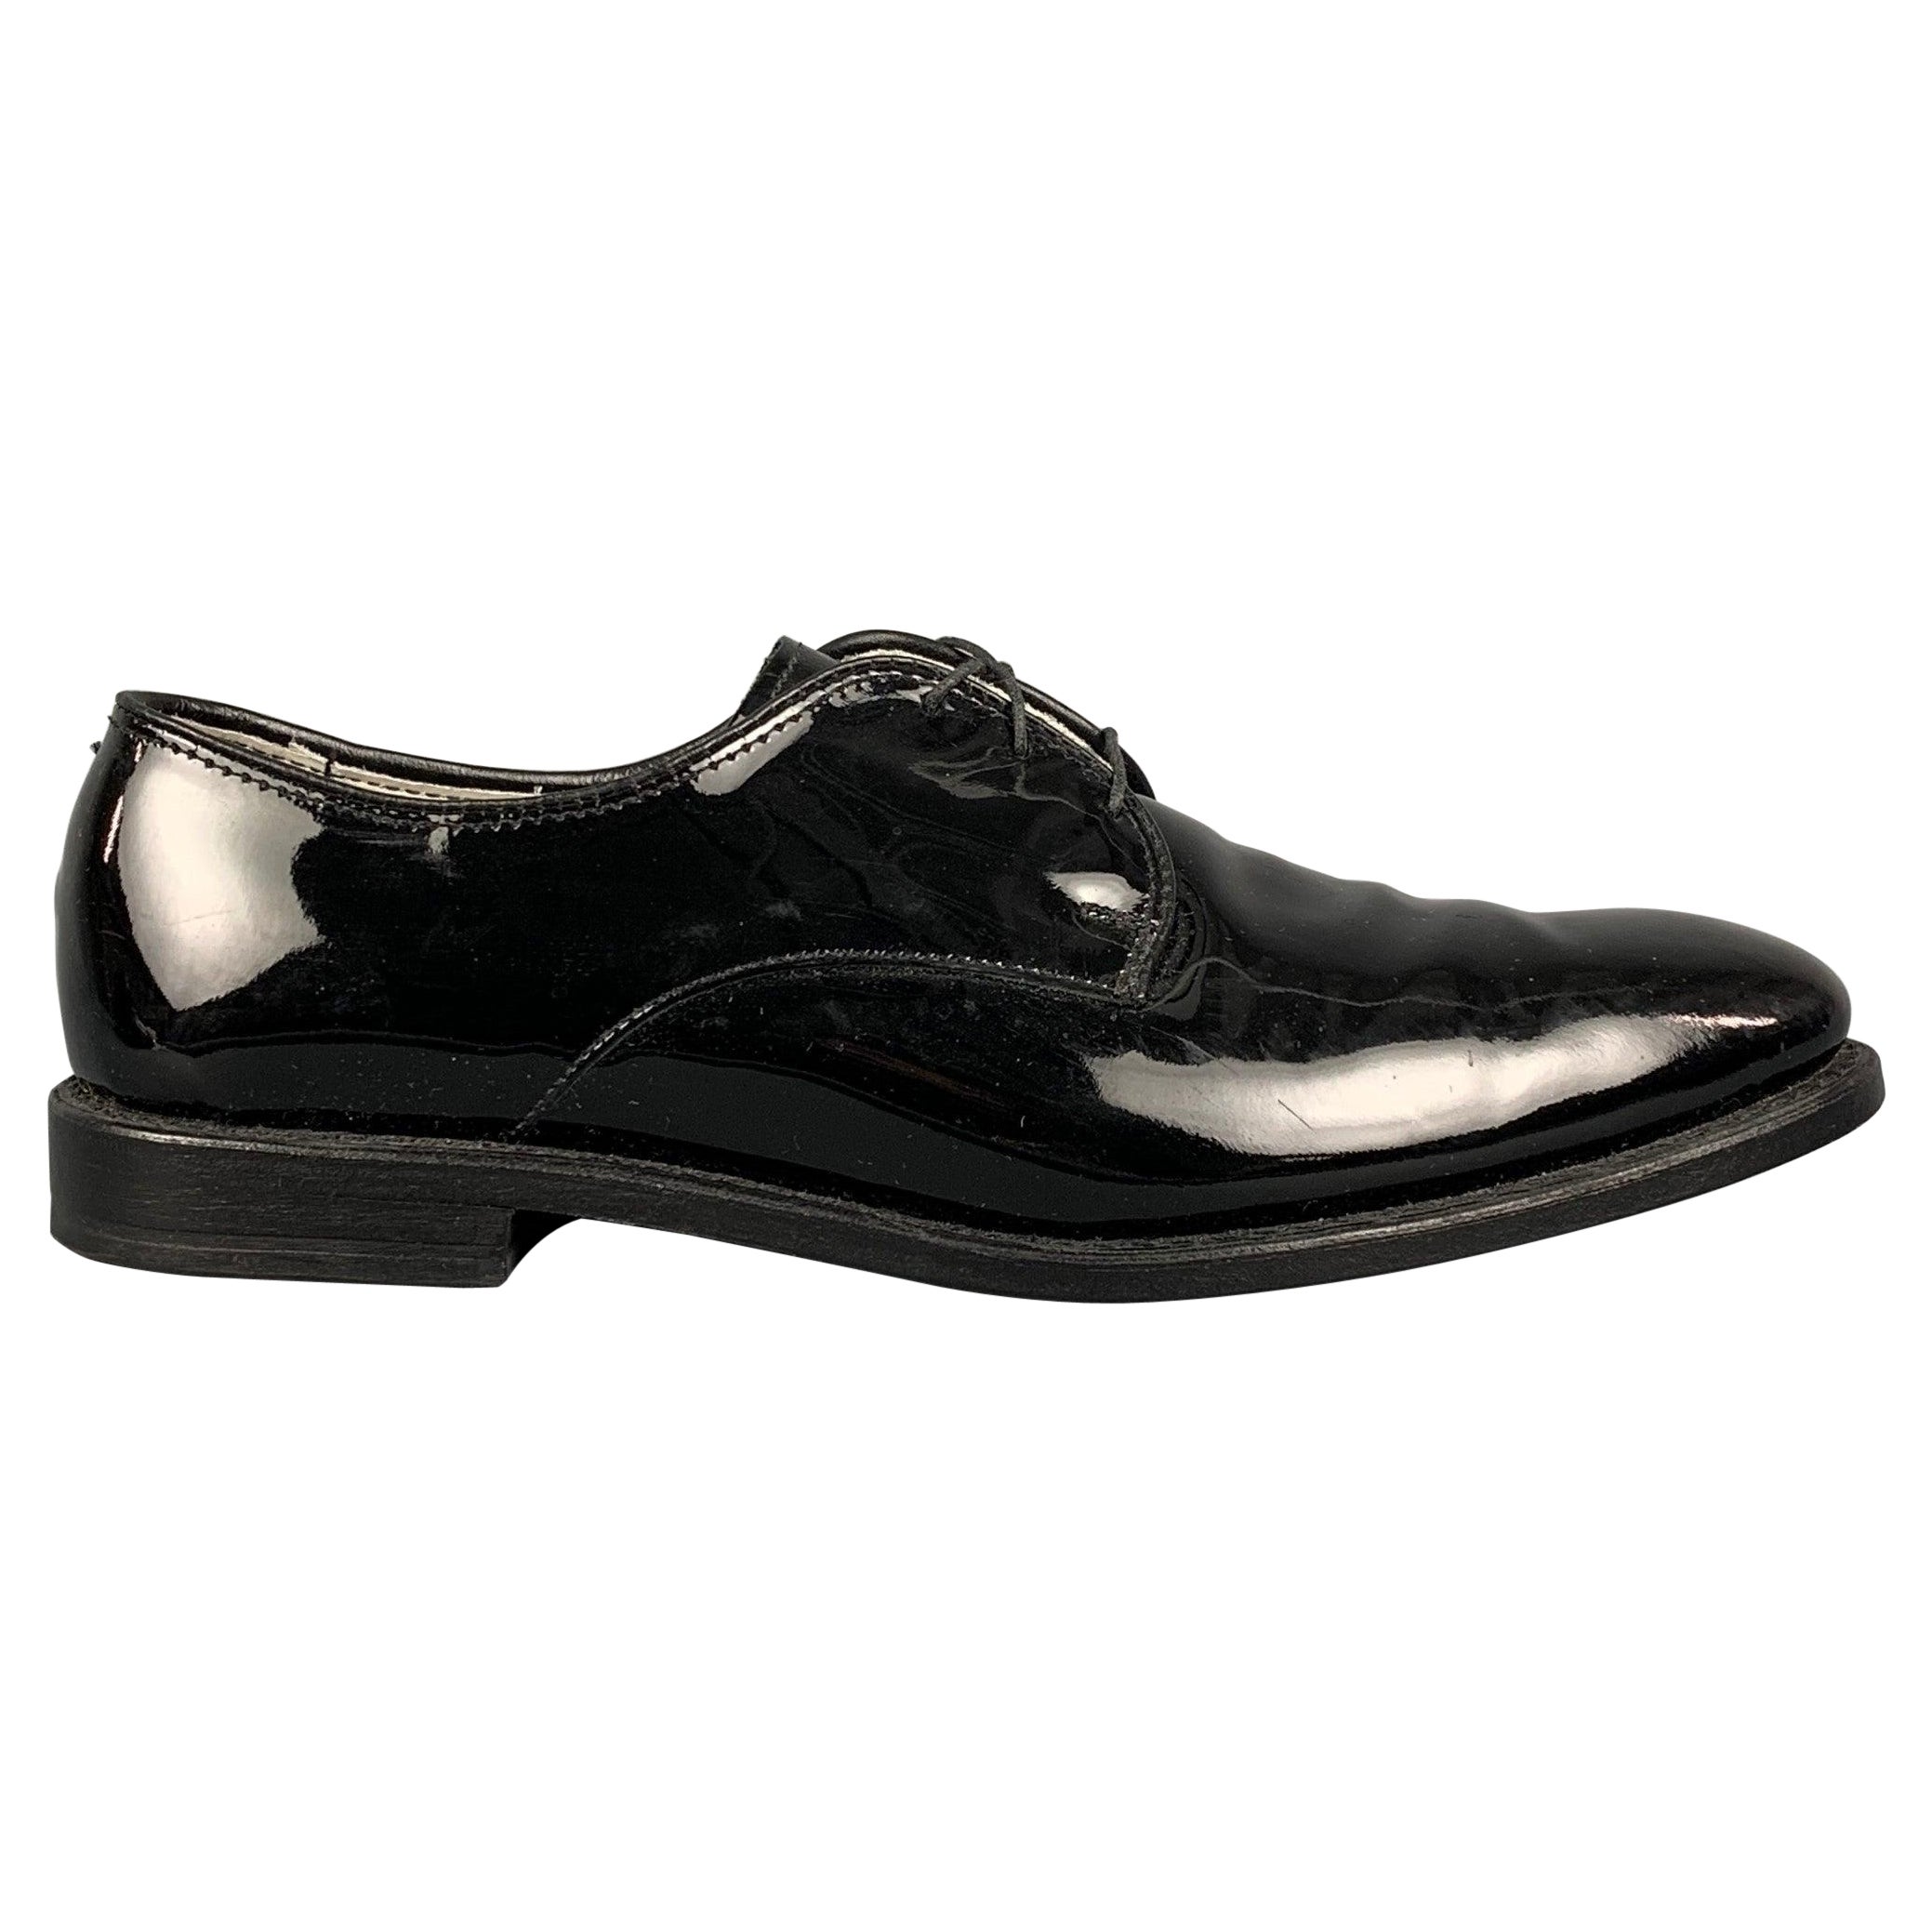 ALLEN EDMONDS Mayfair Size 9 Black Leather Lace Up Shoes For Sale